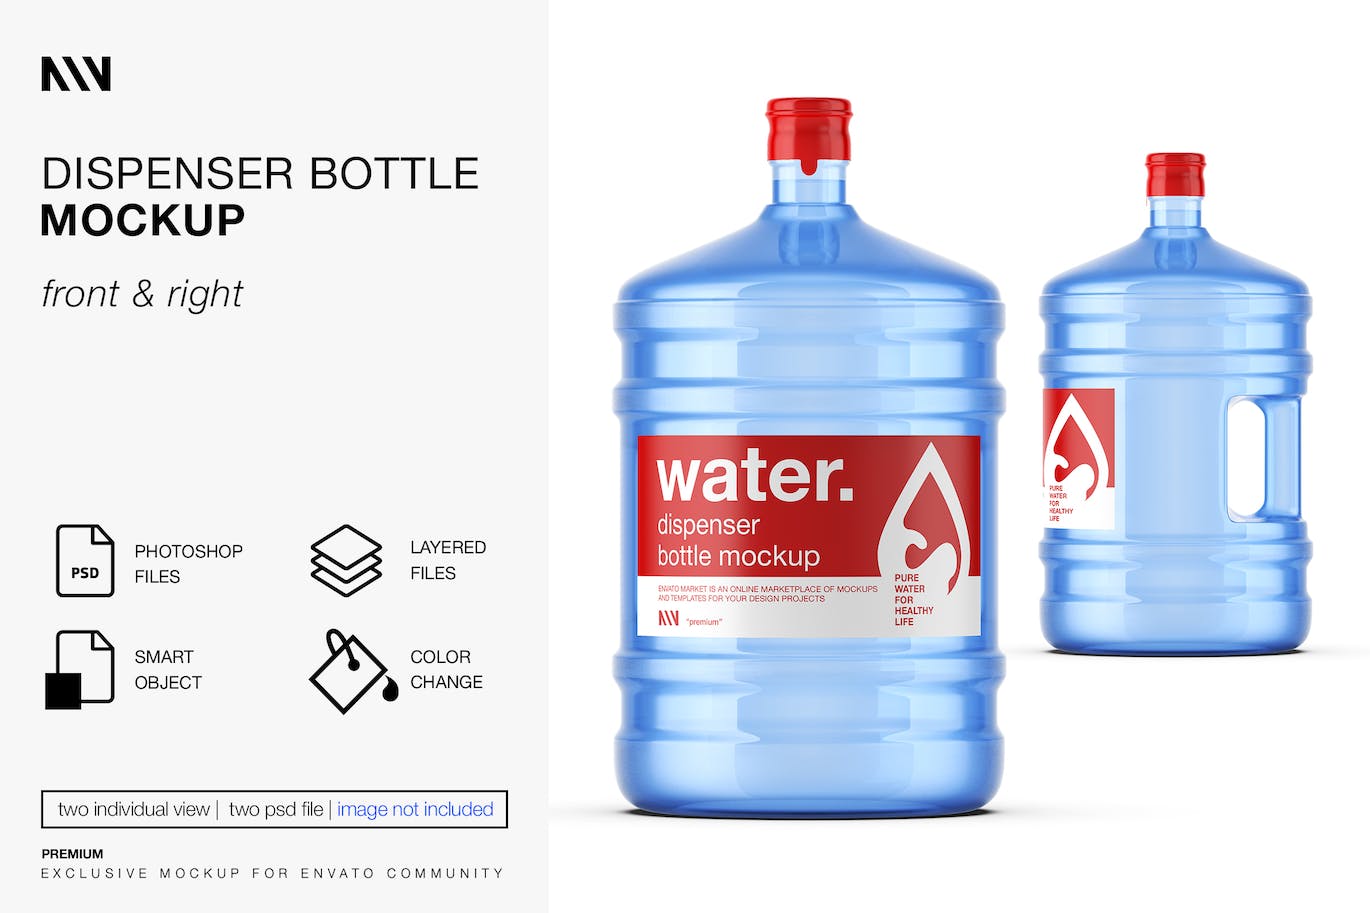 桶装水瓶包装标签设计样机 (PSD)